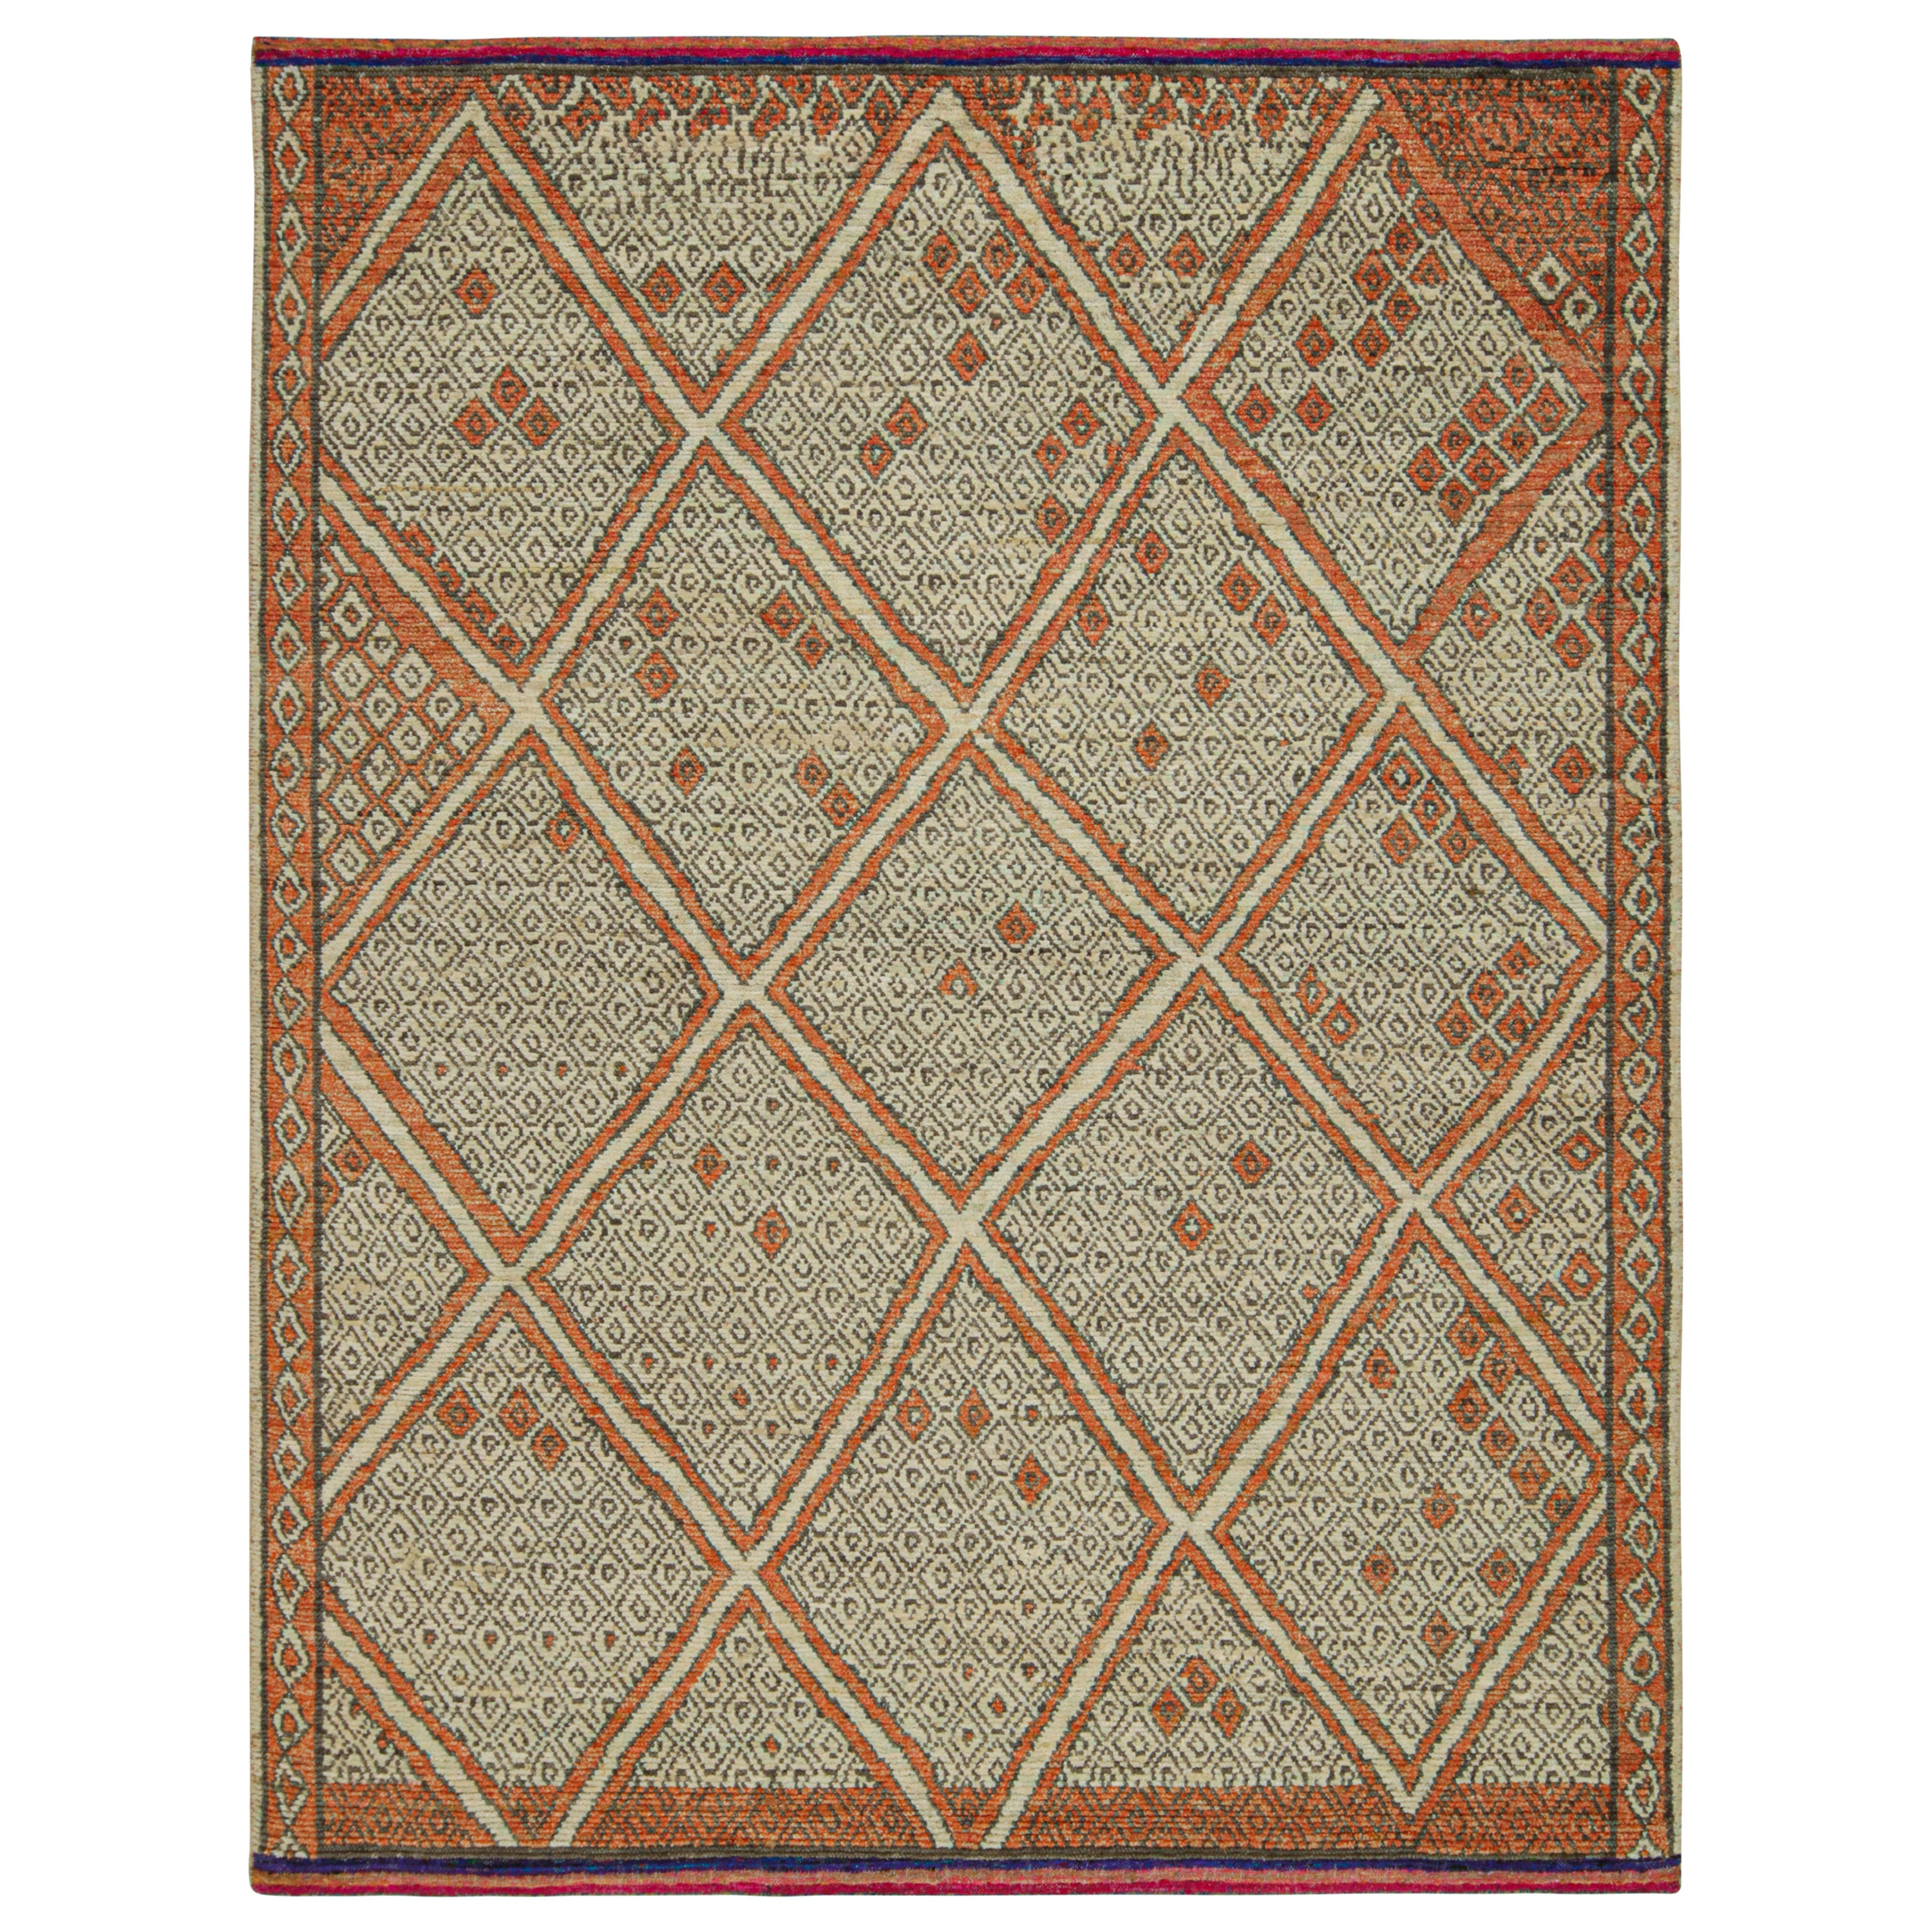 Tapis de style marocain de Rug & Kilim en rouille avec motif géométrique beige et gris